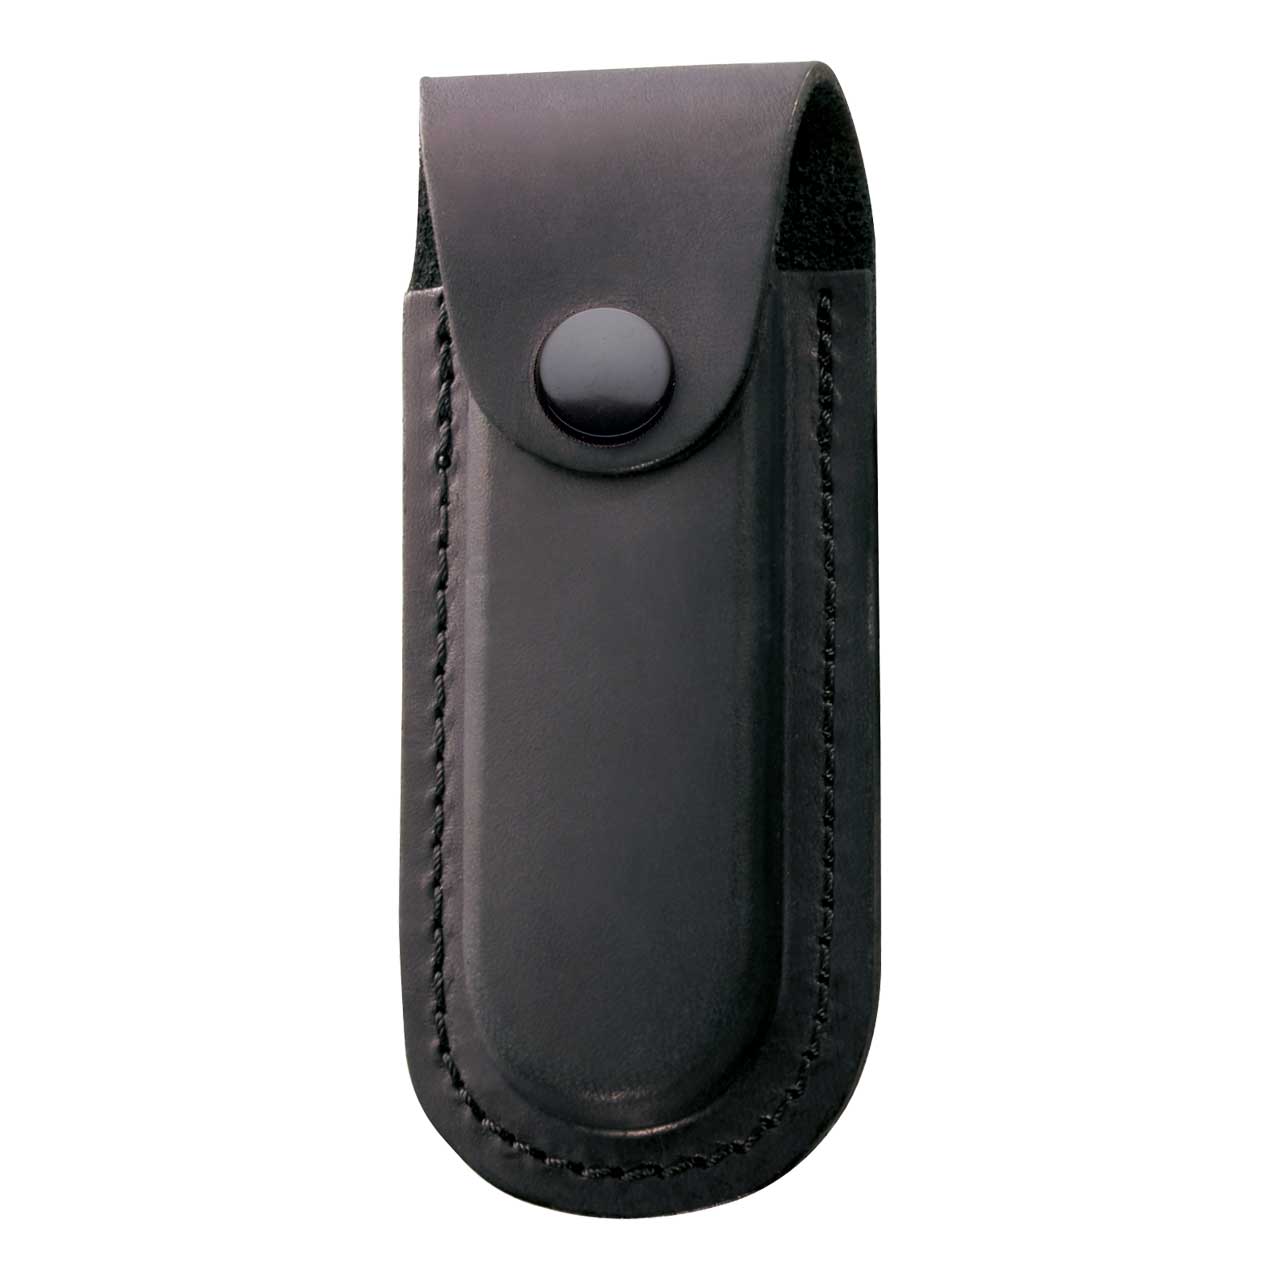 Picture of Herbertz - Leather Case 2674110 Black for Stapler Length 13 cm